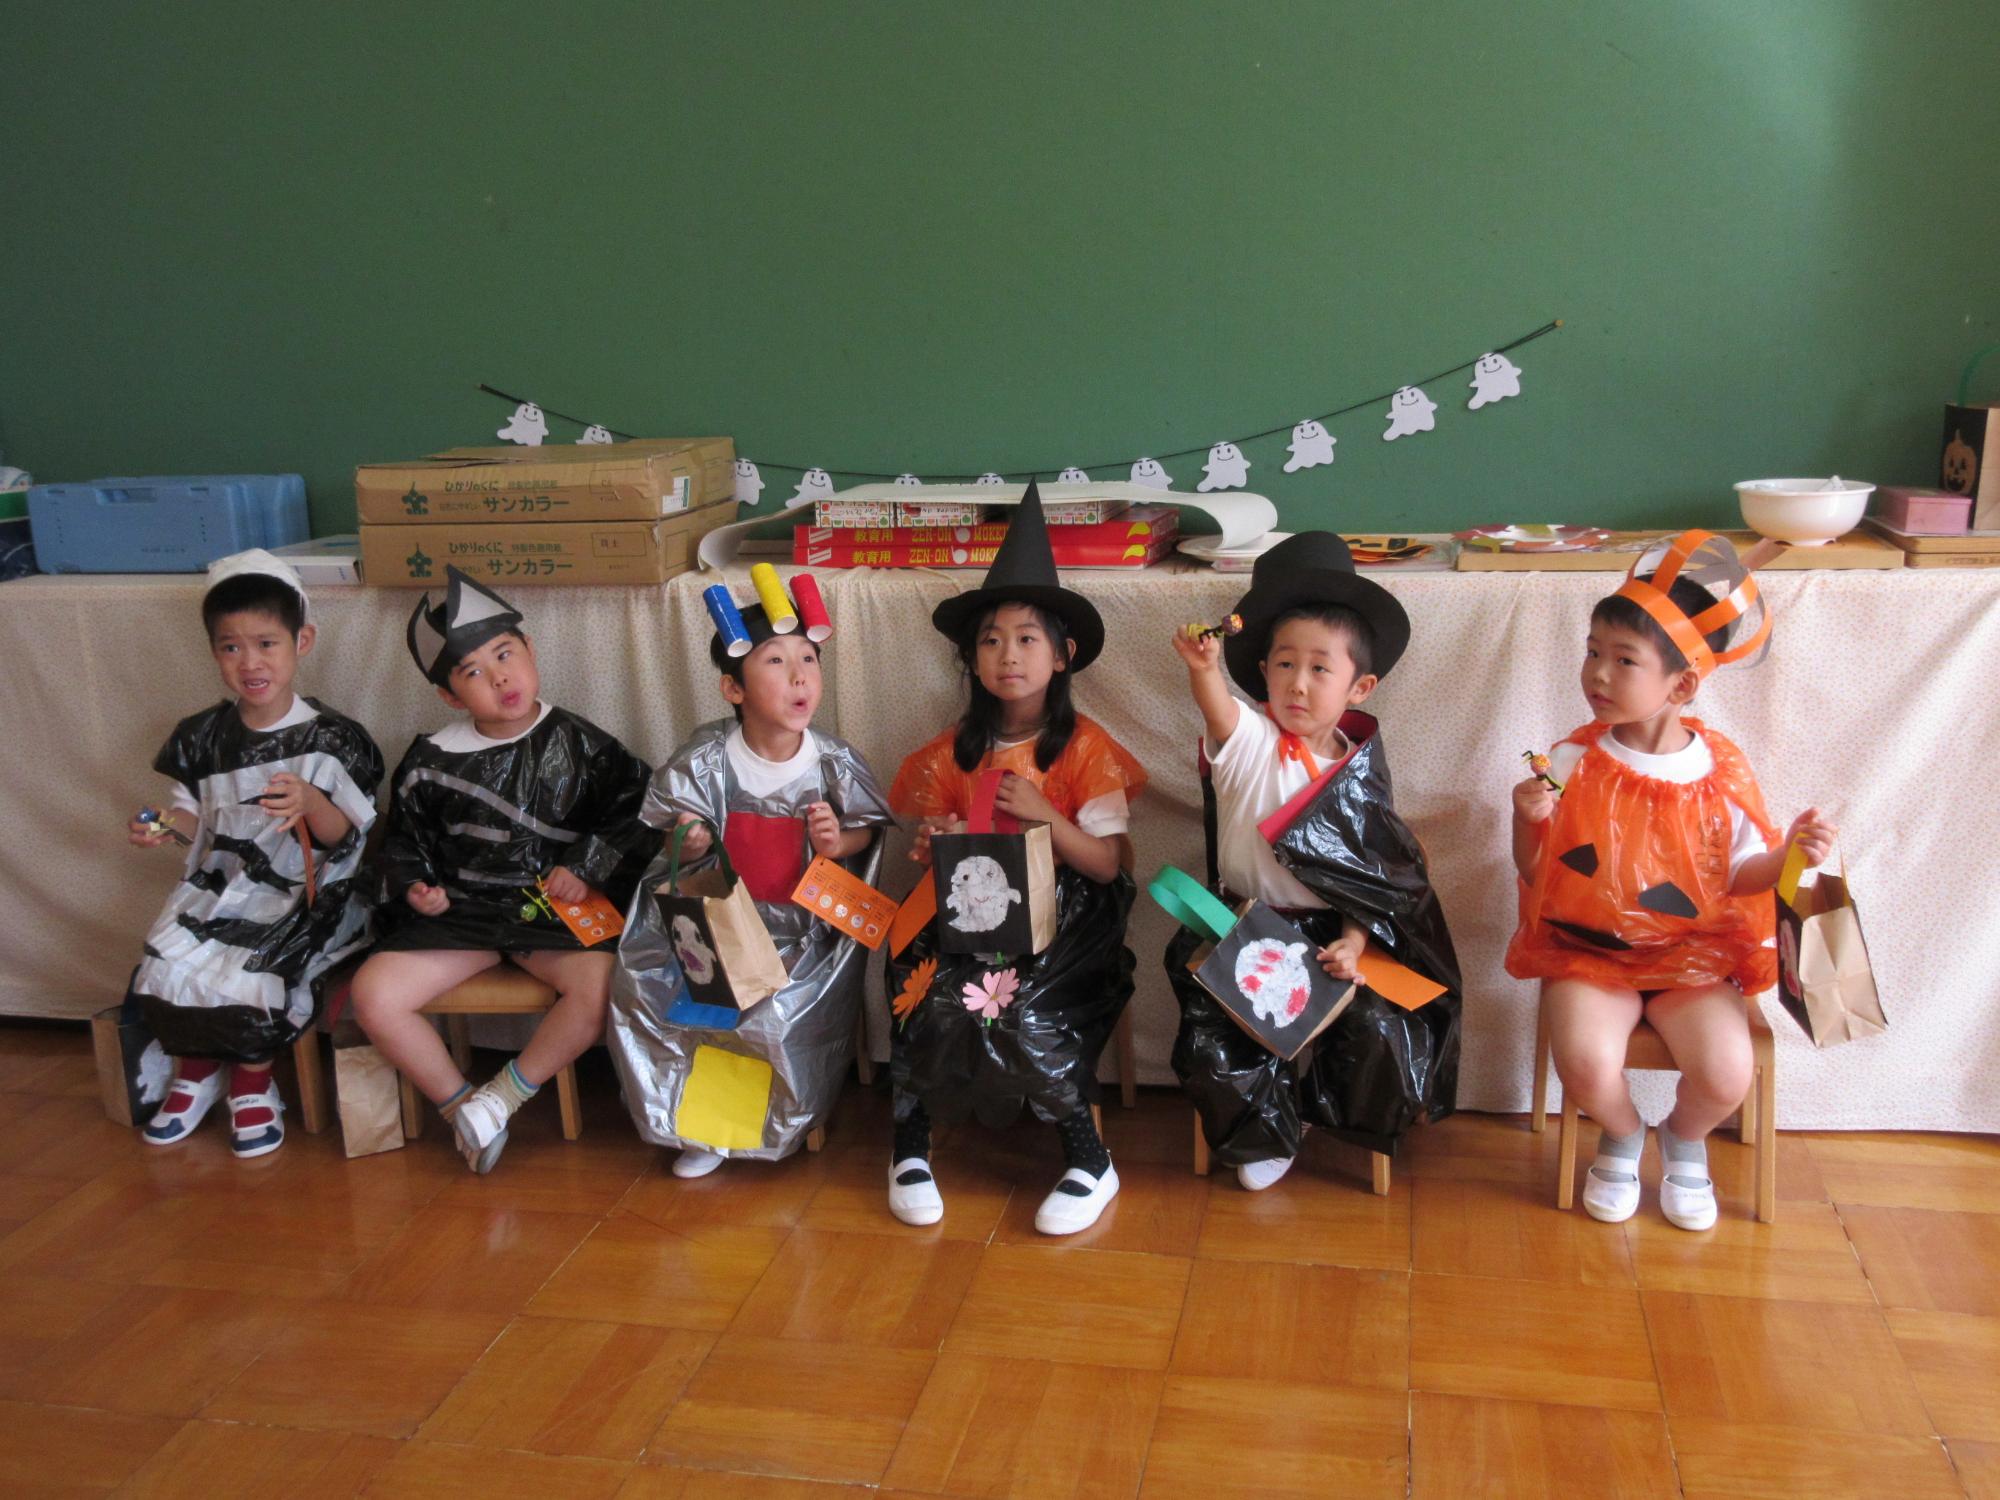 ミイラ男、コウモリ、信号マン、魔女、ドラキュラ、カボチャの恰好をした園児たちが並んで座っている写真